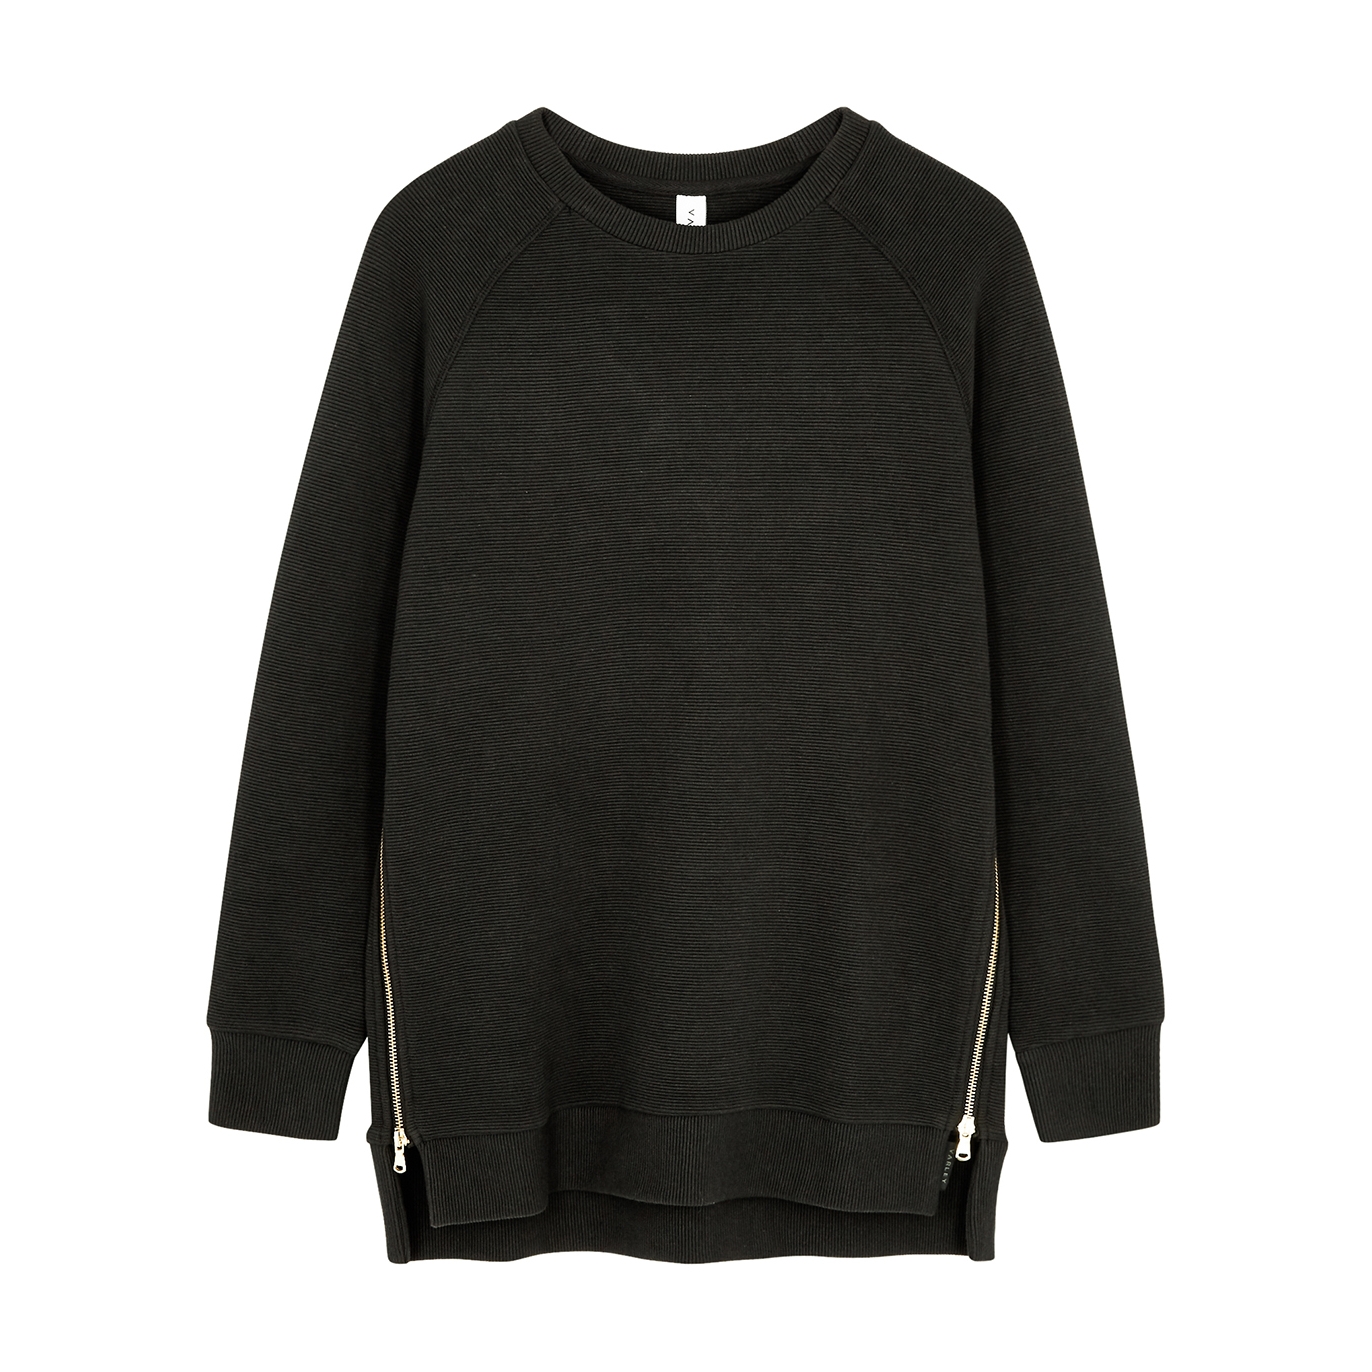 Varley Manning Ribbed Jersey Sweatshirt - Black - XS